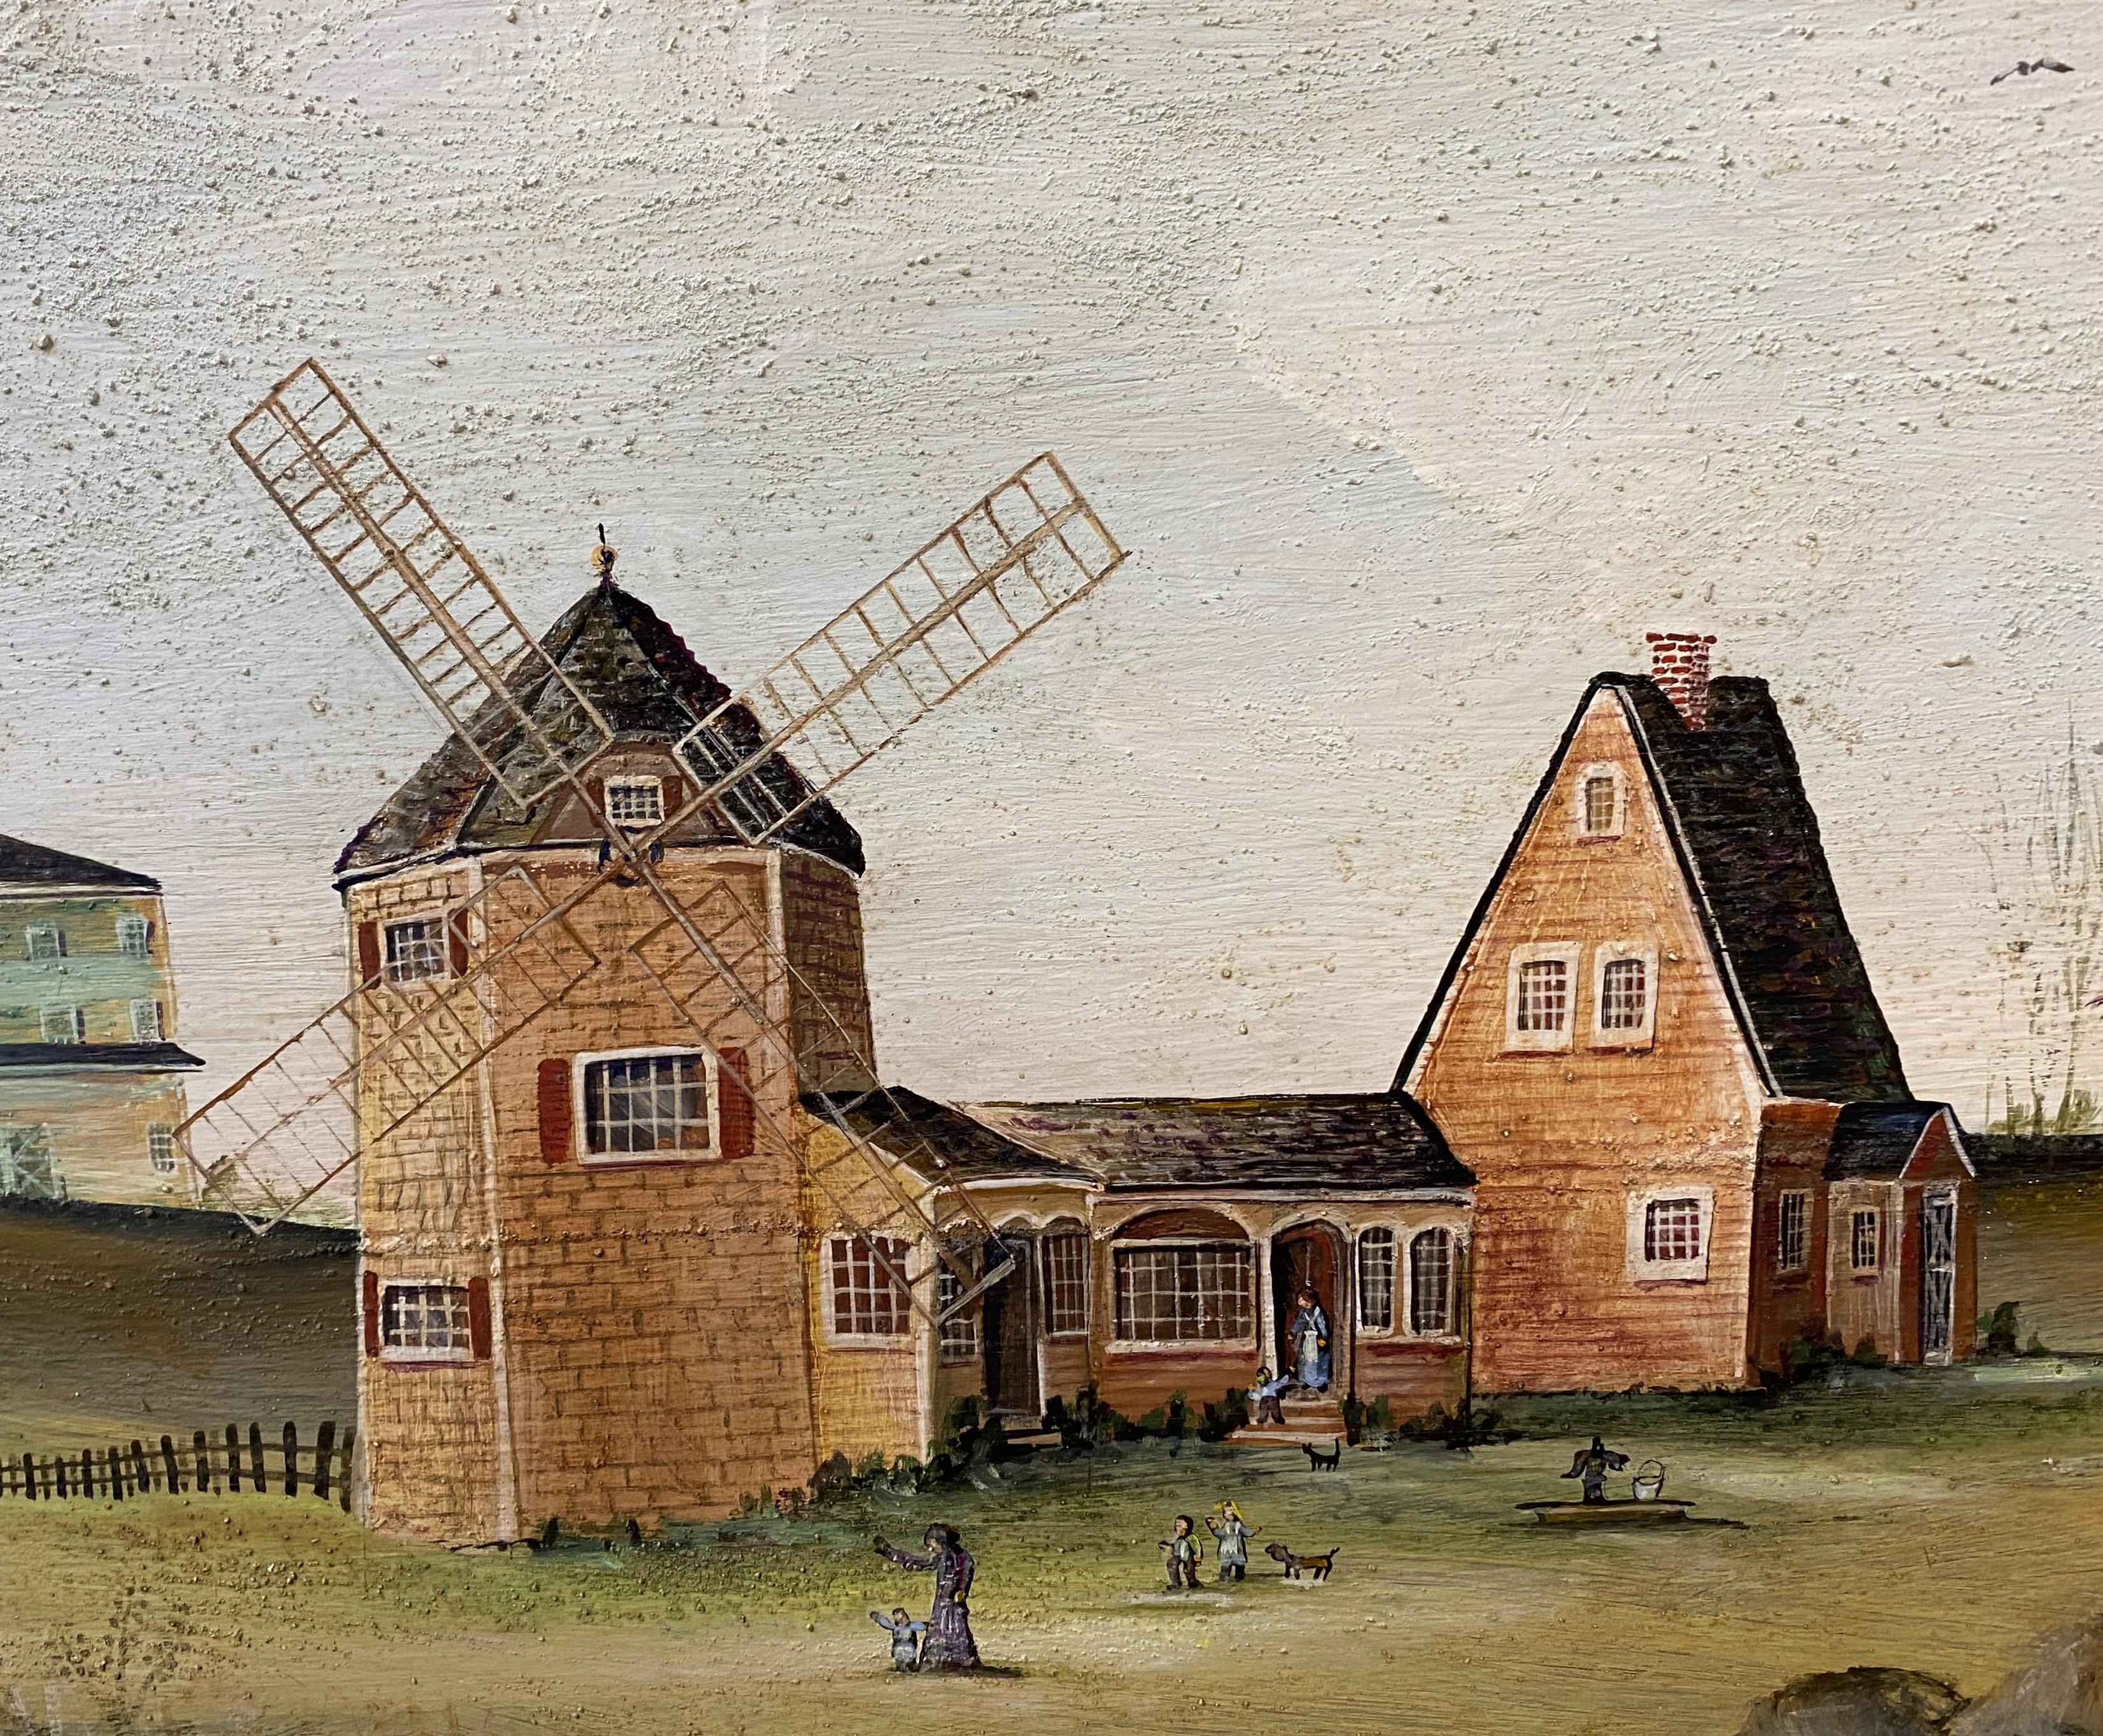 Une belle peinture de paysage naïf avec un moulin à vent par l'artiste américaine Janet Munro (née en 1949). Munro est née à Woburn, MA, et son travail se concentre sur la vie au bord de l'eau des gens de tous les jours - ses sujets préférés sont